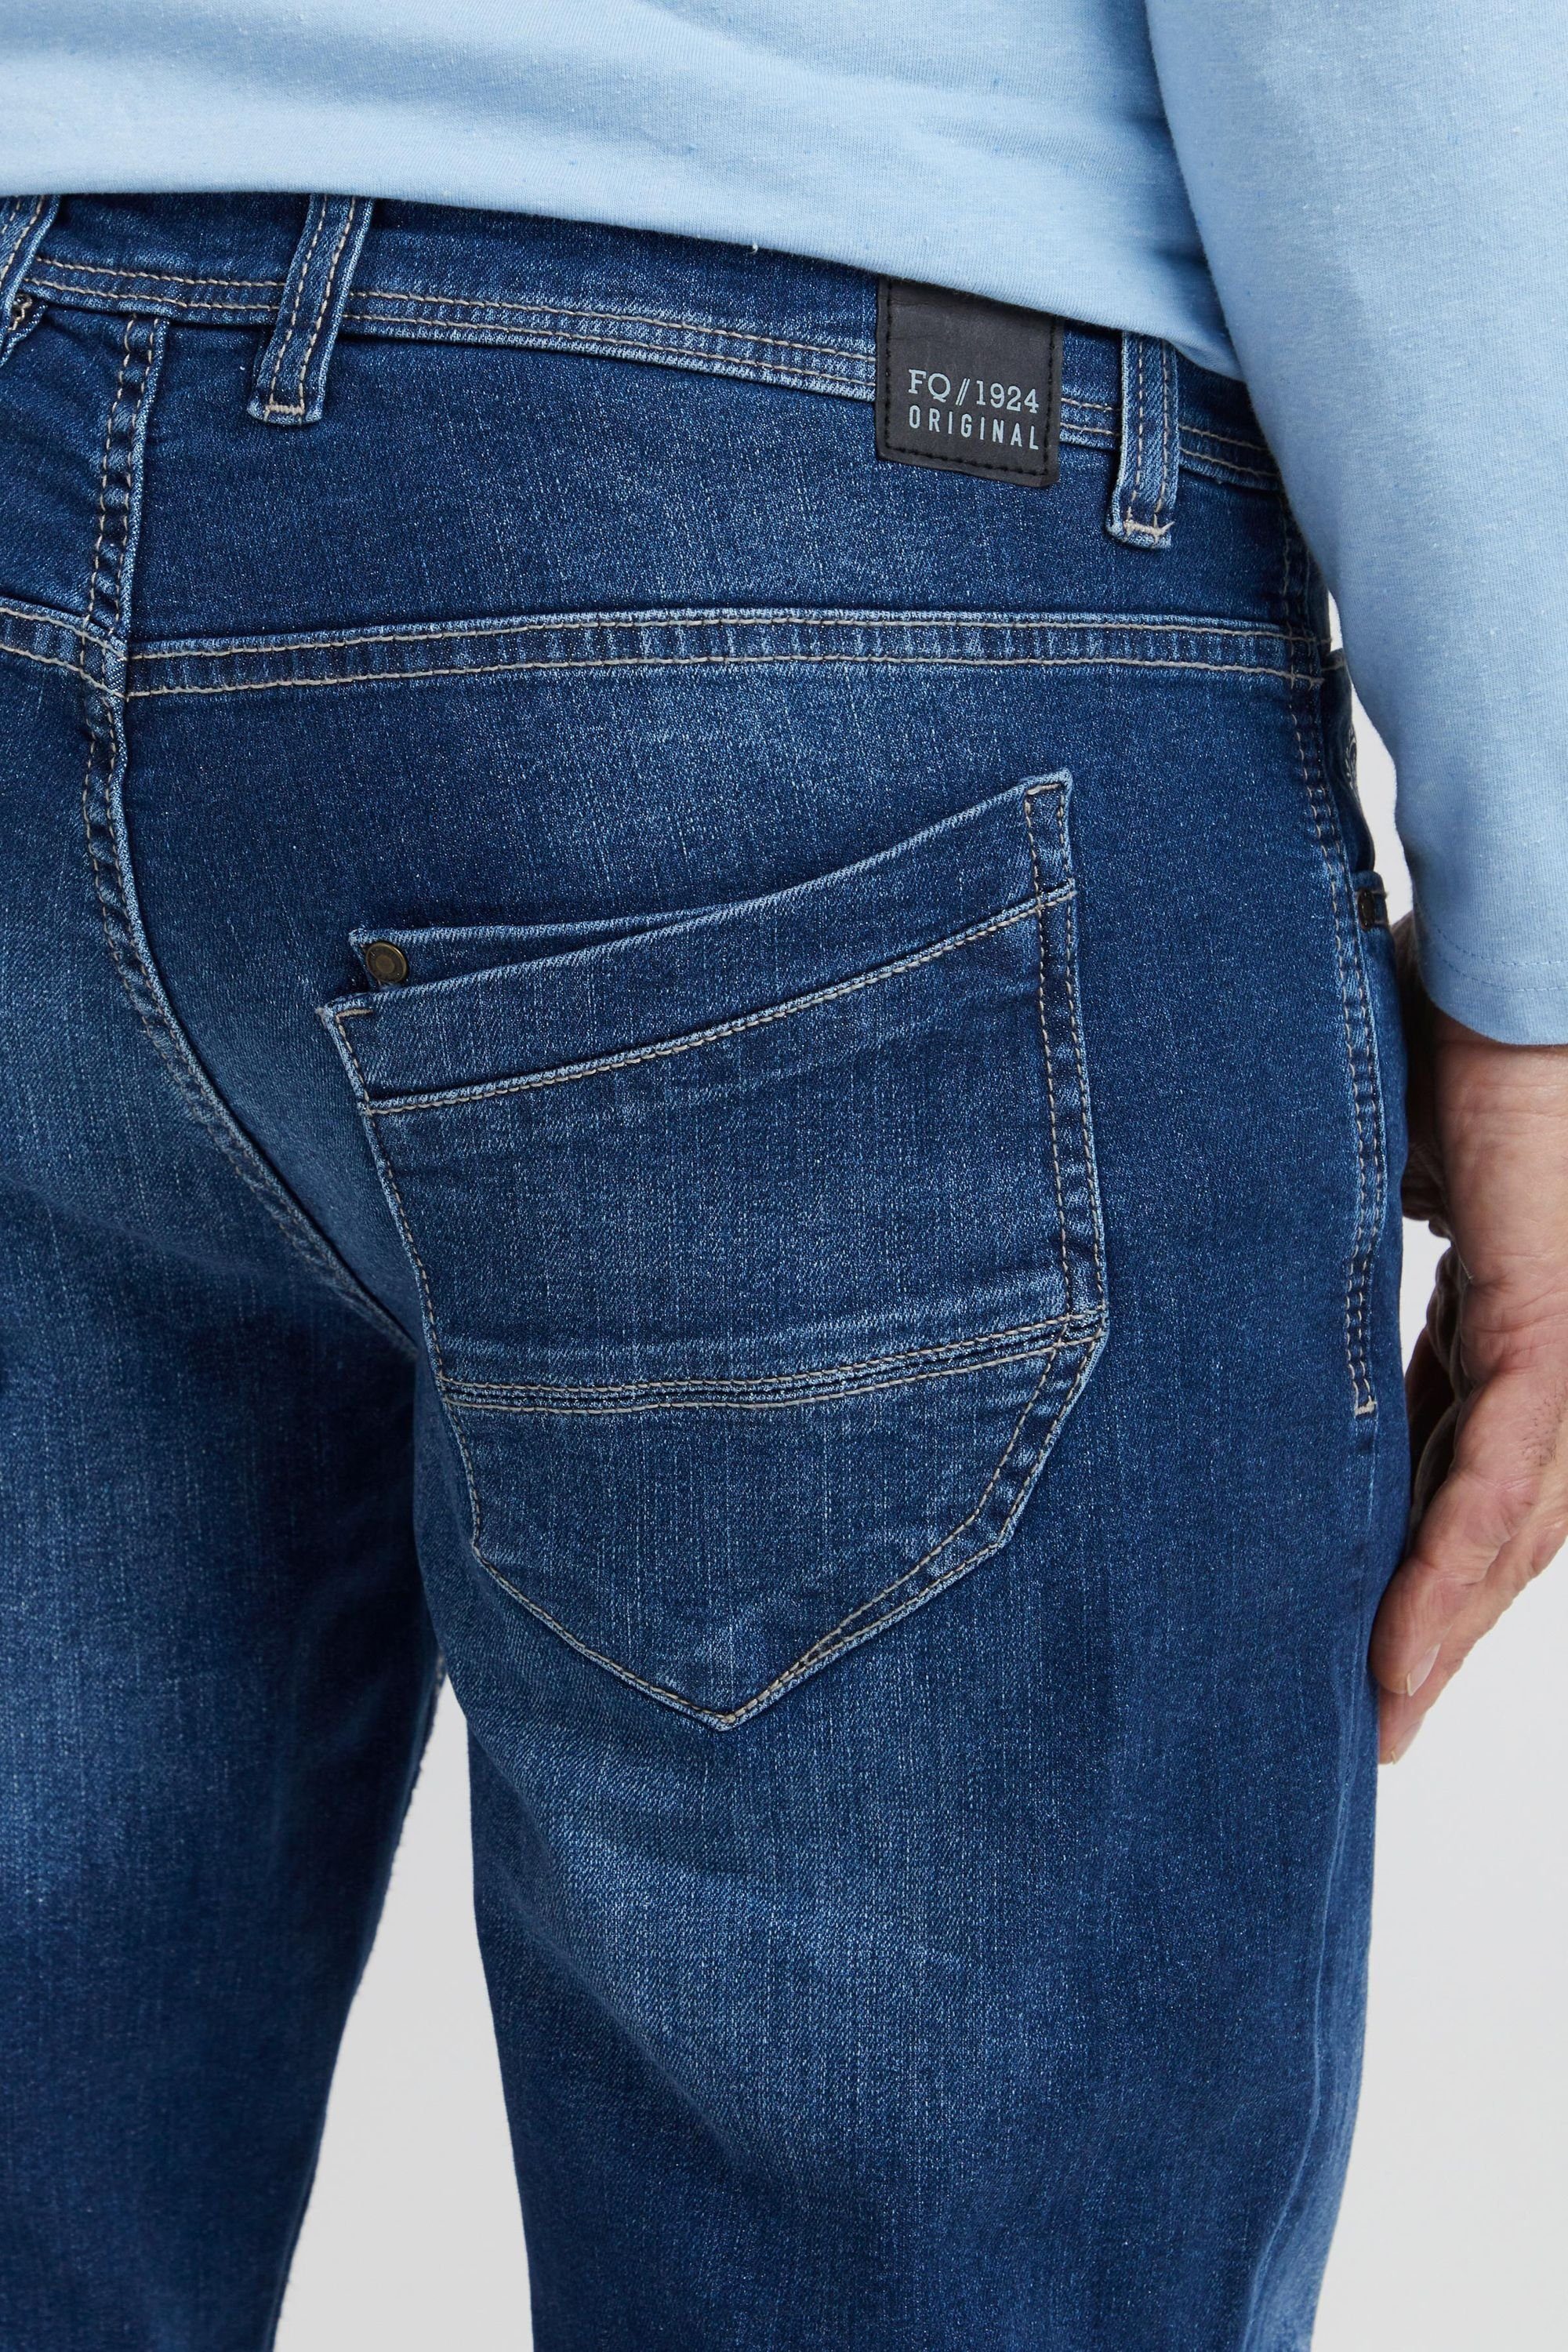 5-Pocket-Jeans FQRoman blue Denim FQ1924 FQ1924 middle